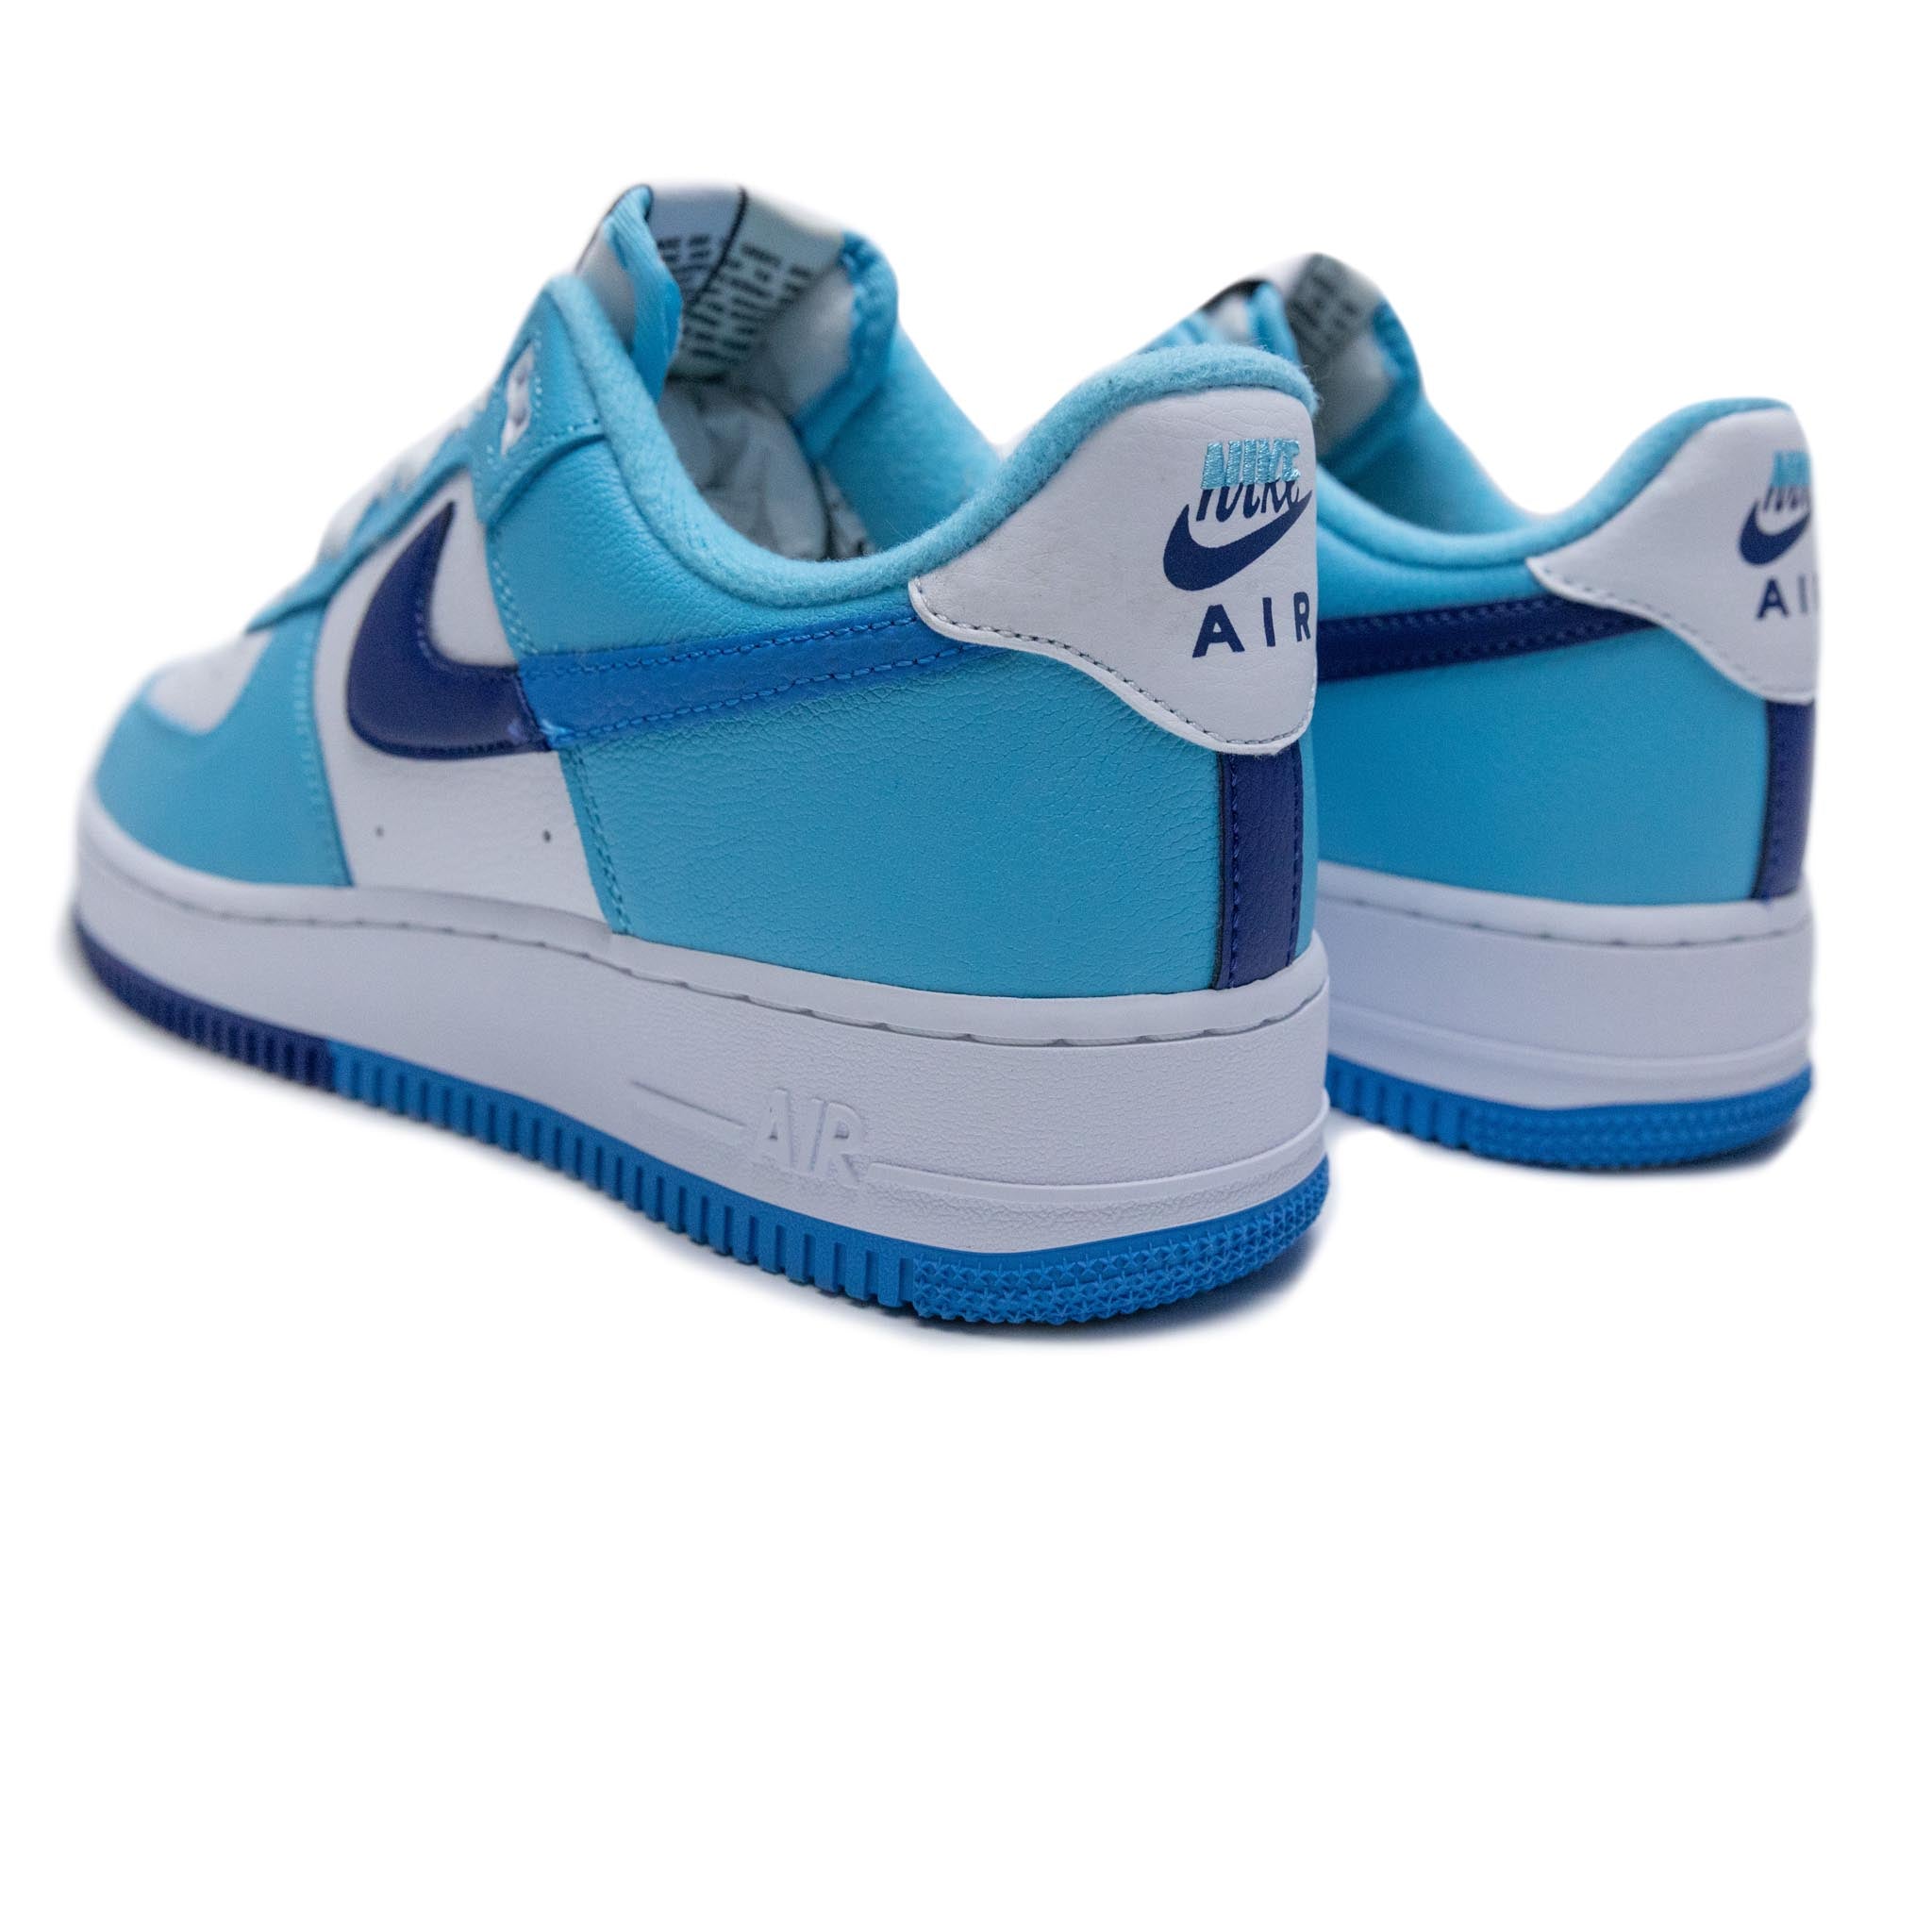 Nike Air Force 1 '07 LV8 Split Light Photo Blue Men's Shoe